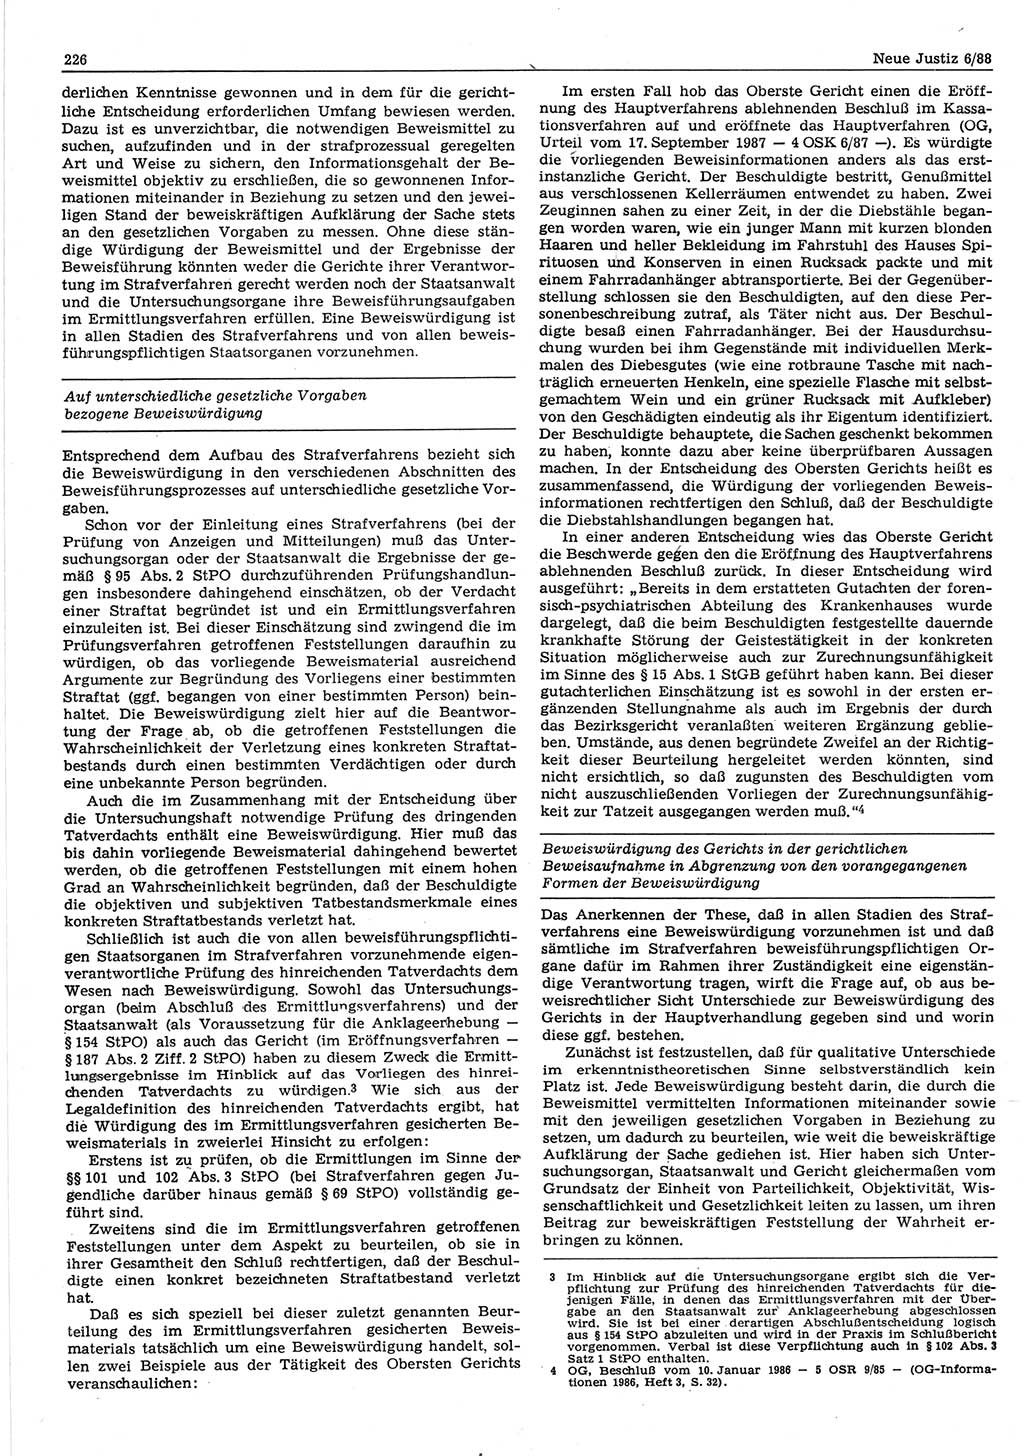 Neue Justiz (NJ), Zeitschrift für sozialistisches Recht und Gesetzlichkeit [Deutsche Demokratische Republik (DDR)], 42. Jahrgang 1988, Seite 226 (NJ DDR 1988, S. 226)